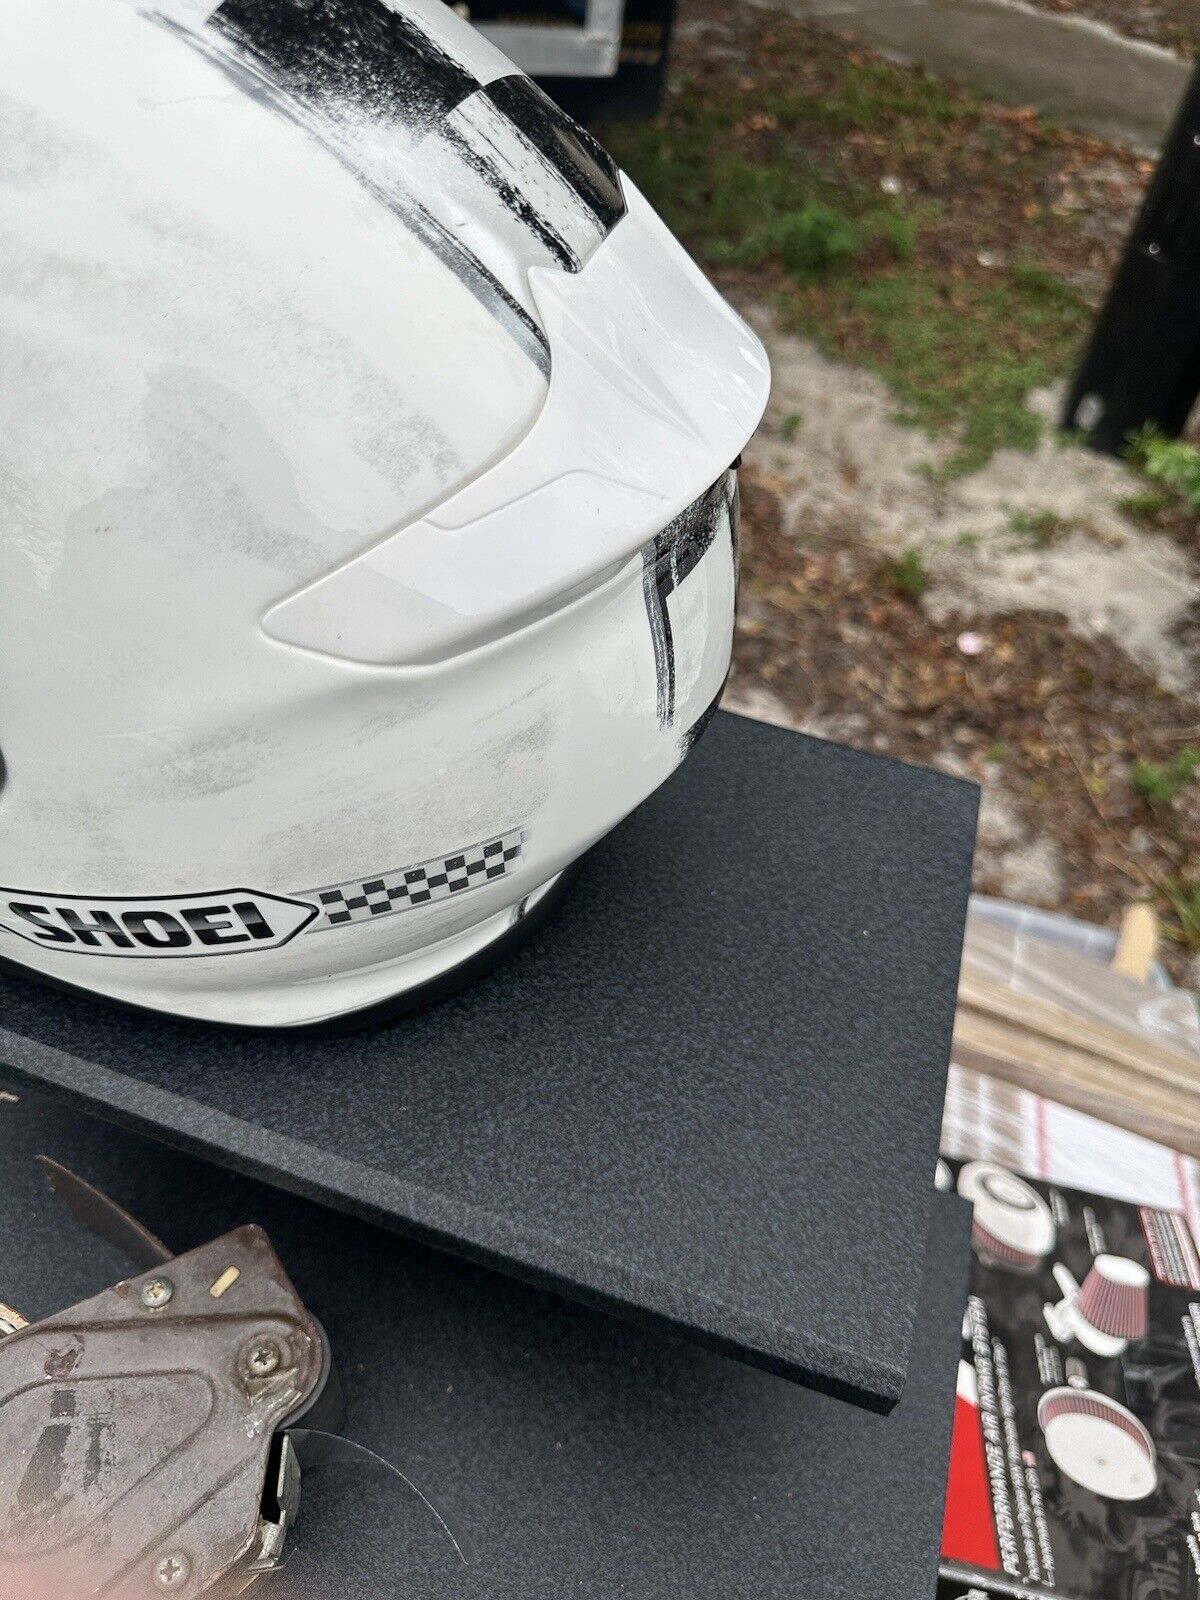 Shoei RF1200 Full Face motorcycle Helmet Small White New